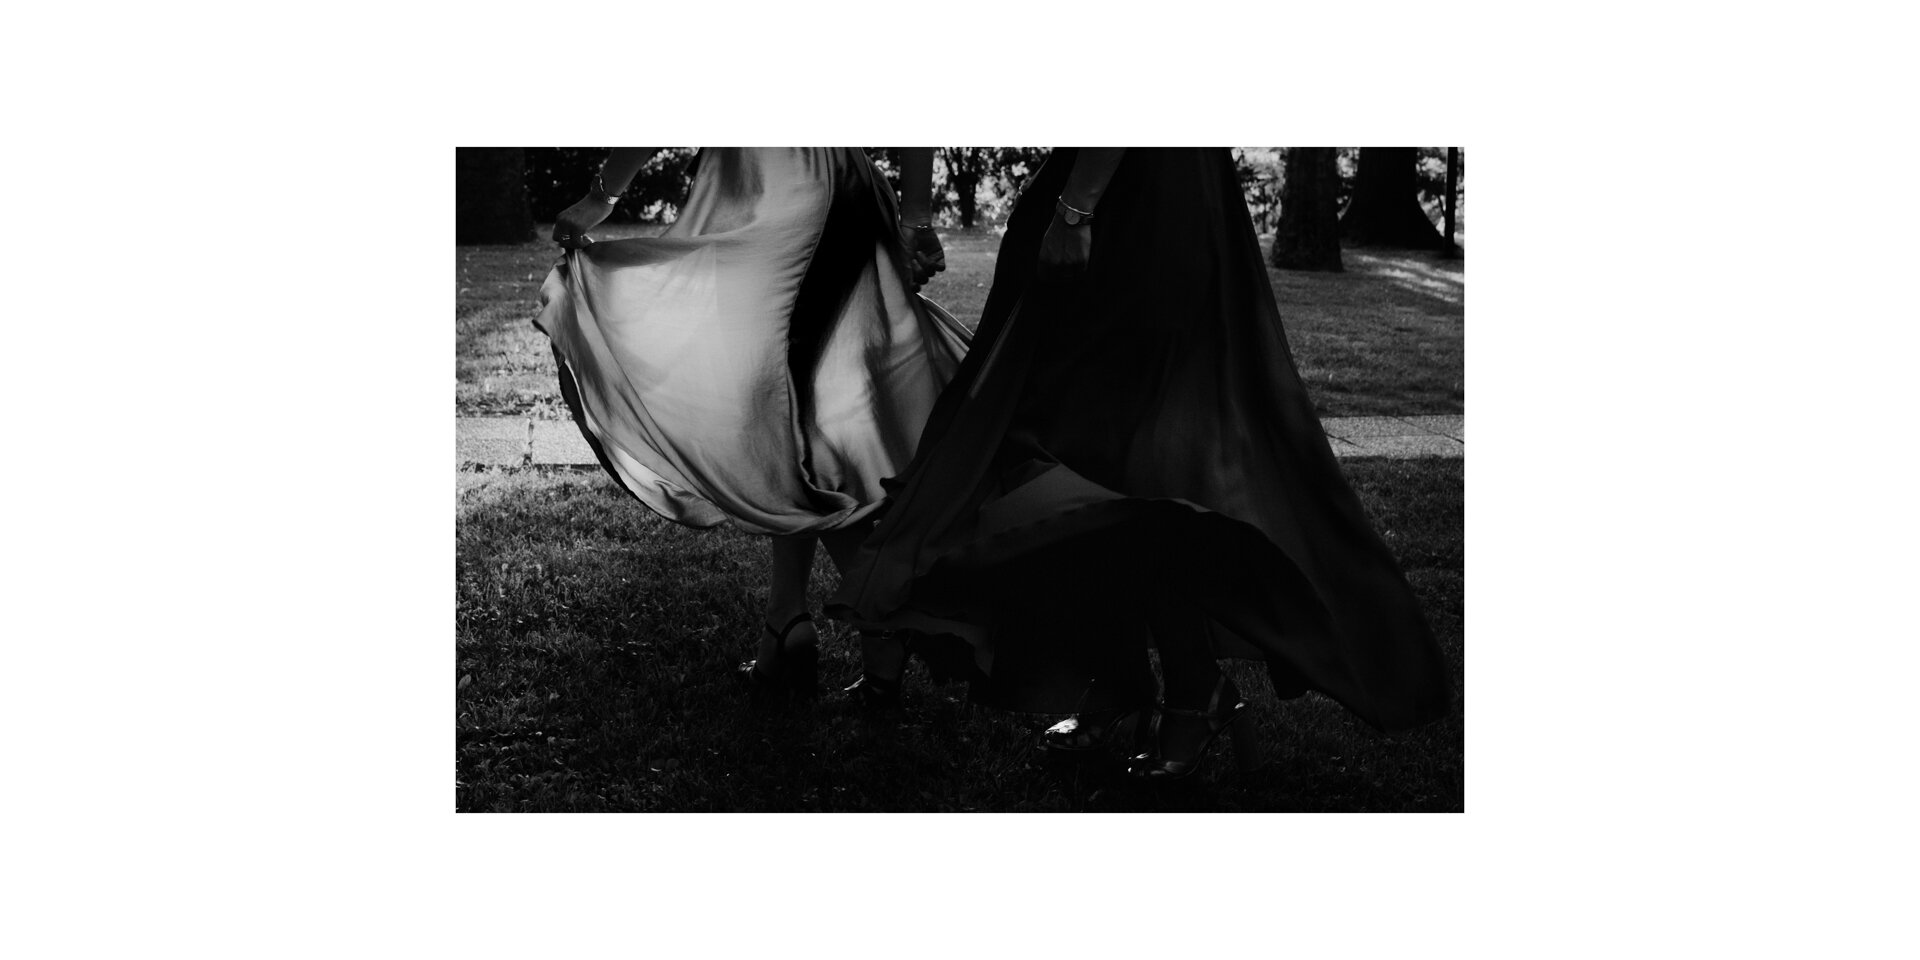 miglior-fotografo-matrimonio-leica-bianco e nero- silvia roli